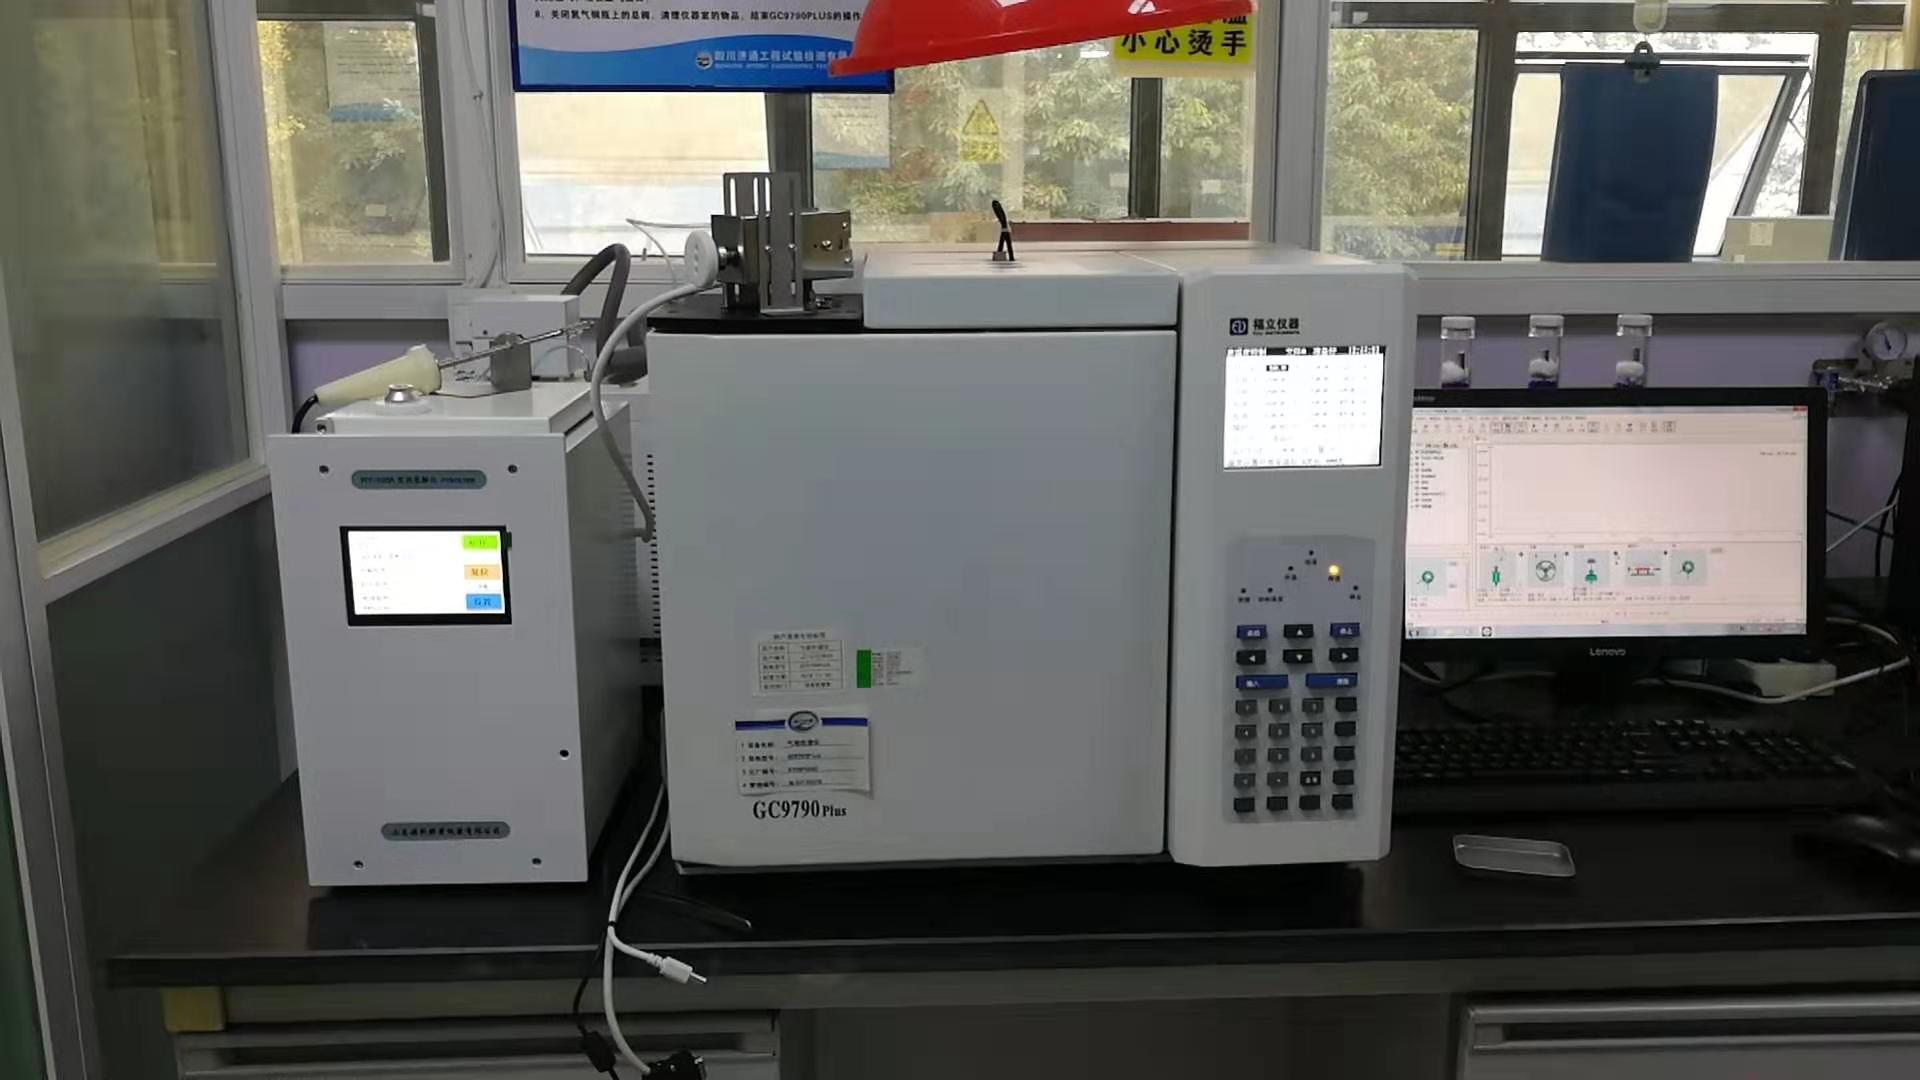 RY-100A热裂解仪用于四川某工程检测公司混凝土硅烷浸渍深度气相色谱仪检测